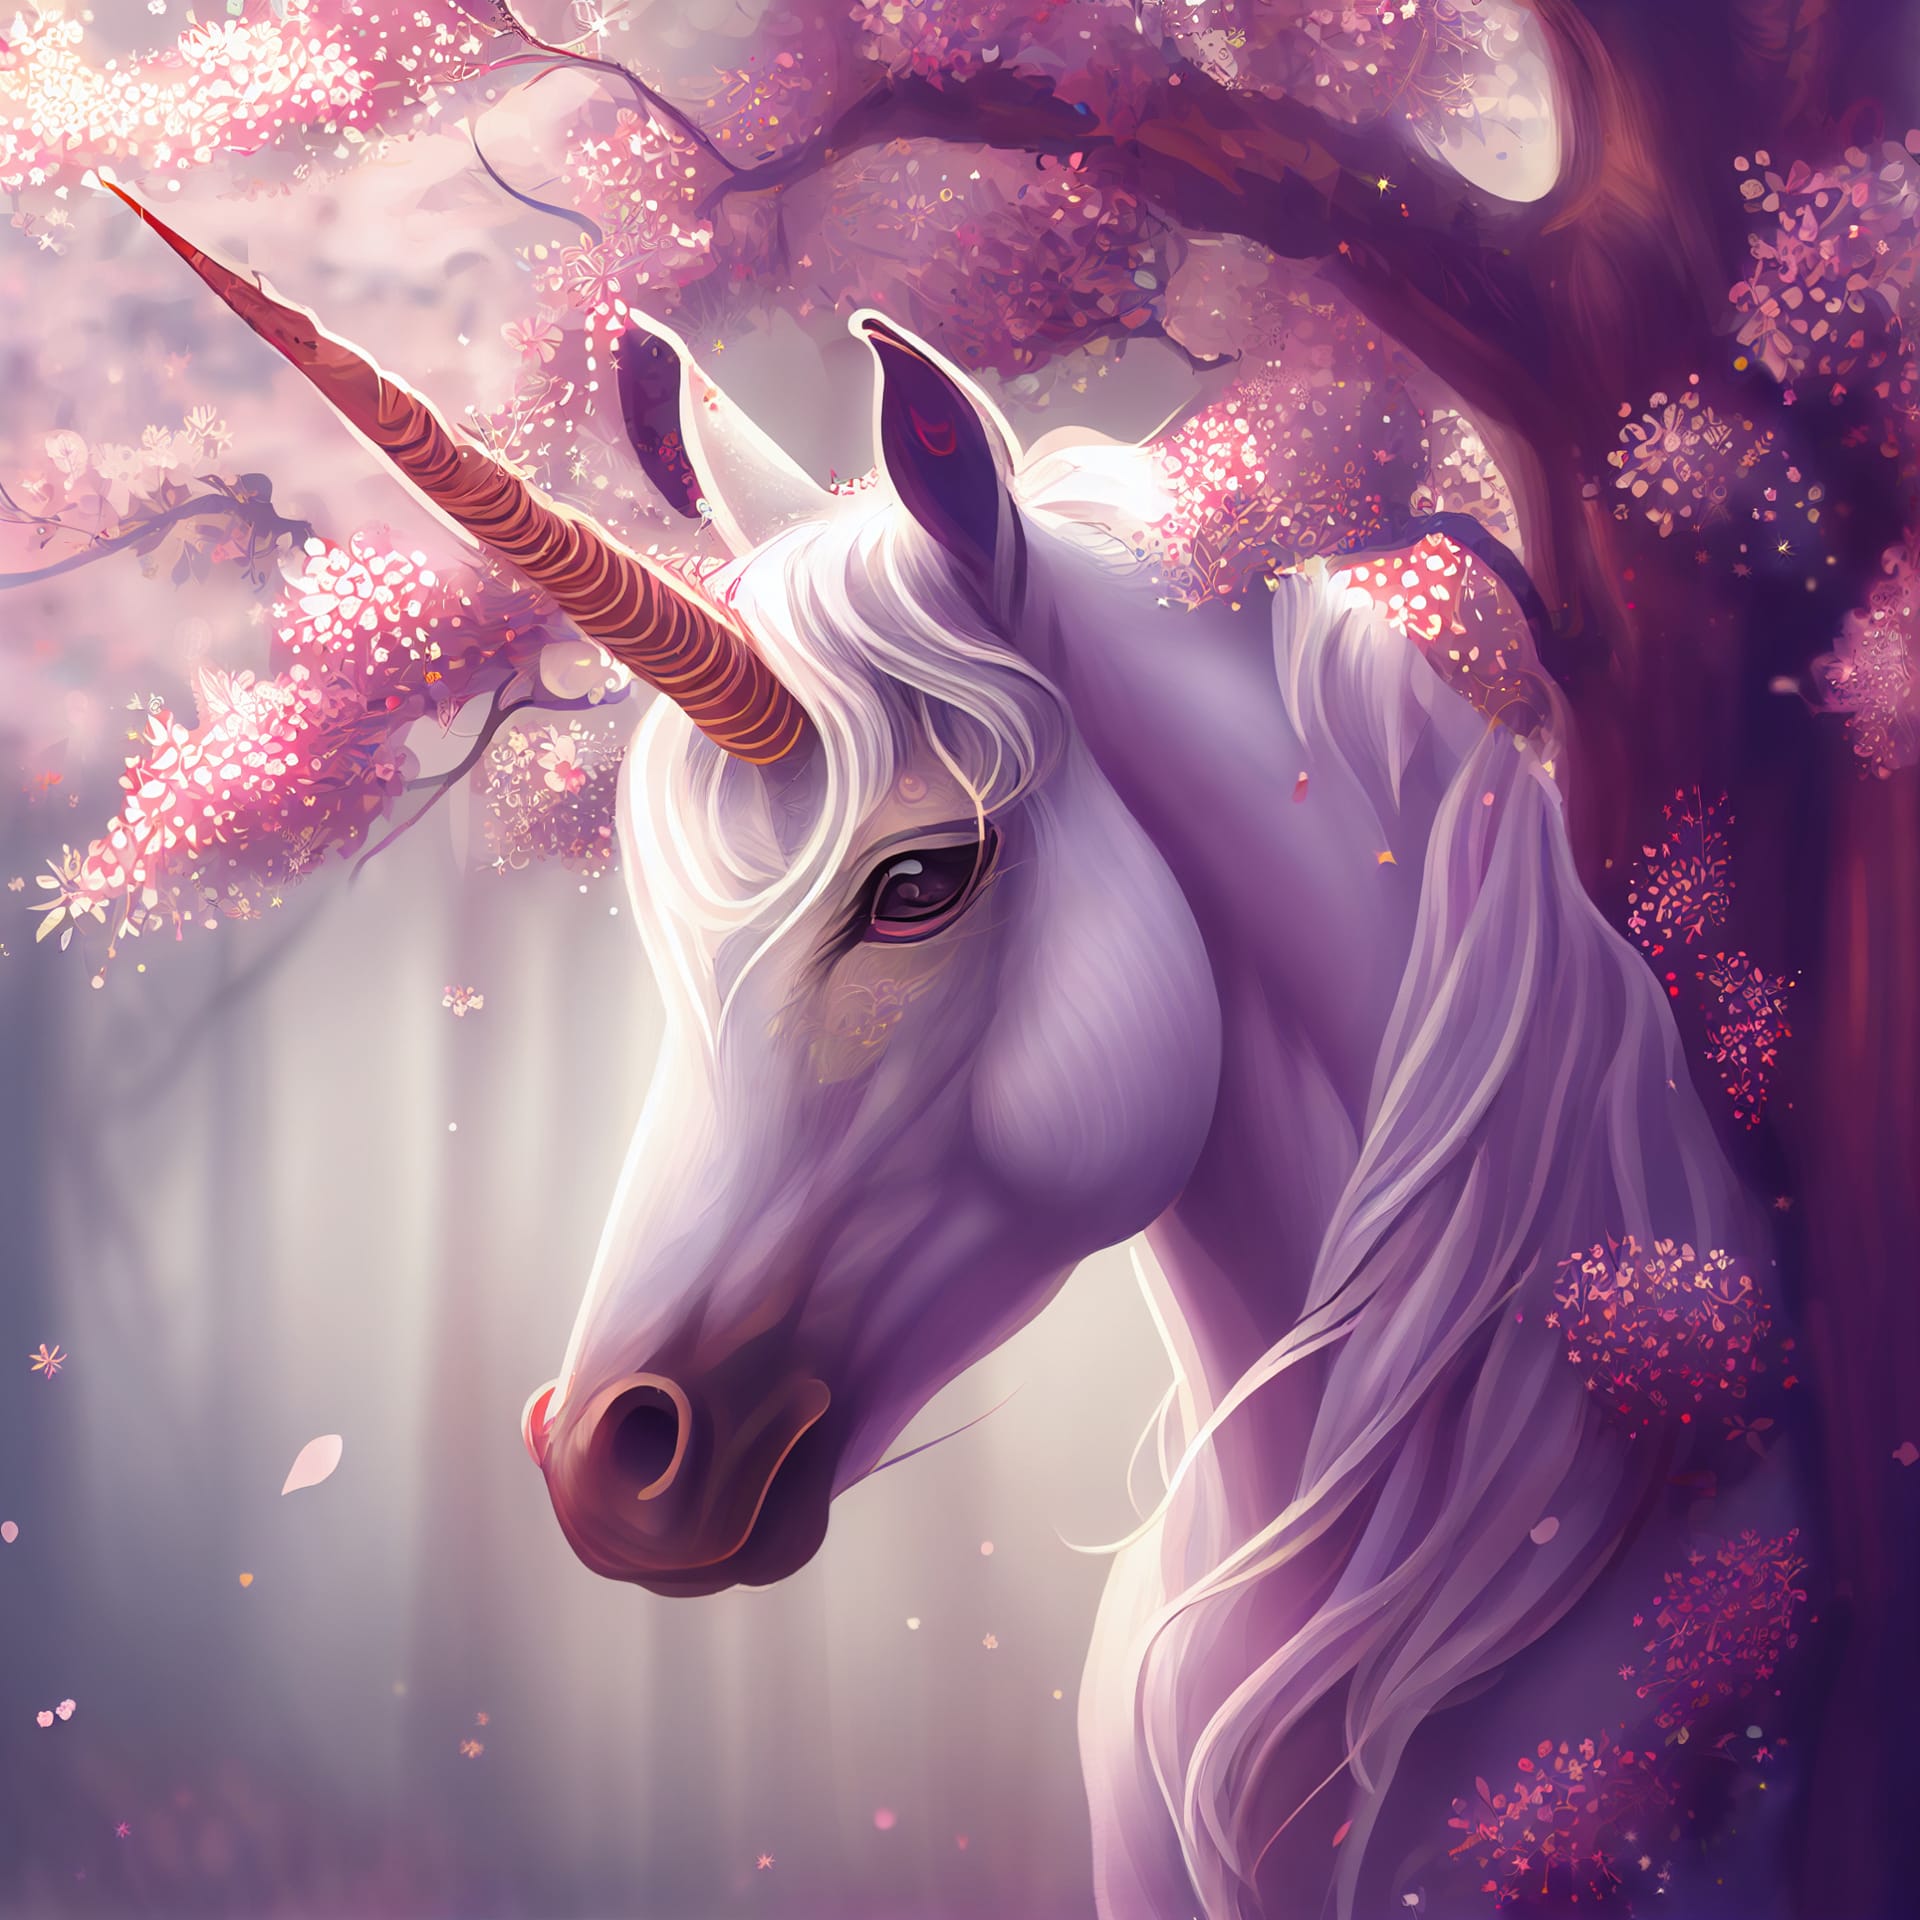 Cute fantasy unicorn cherry blossom sakura tree illustration fine picture